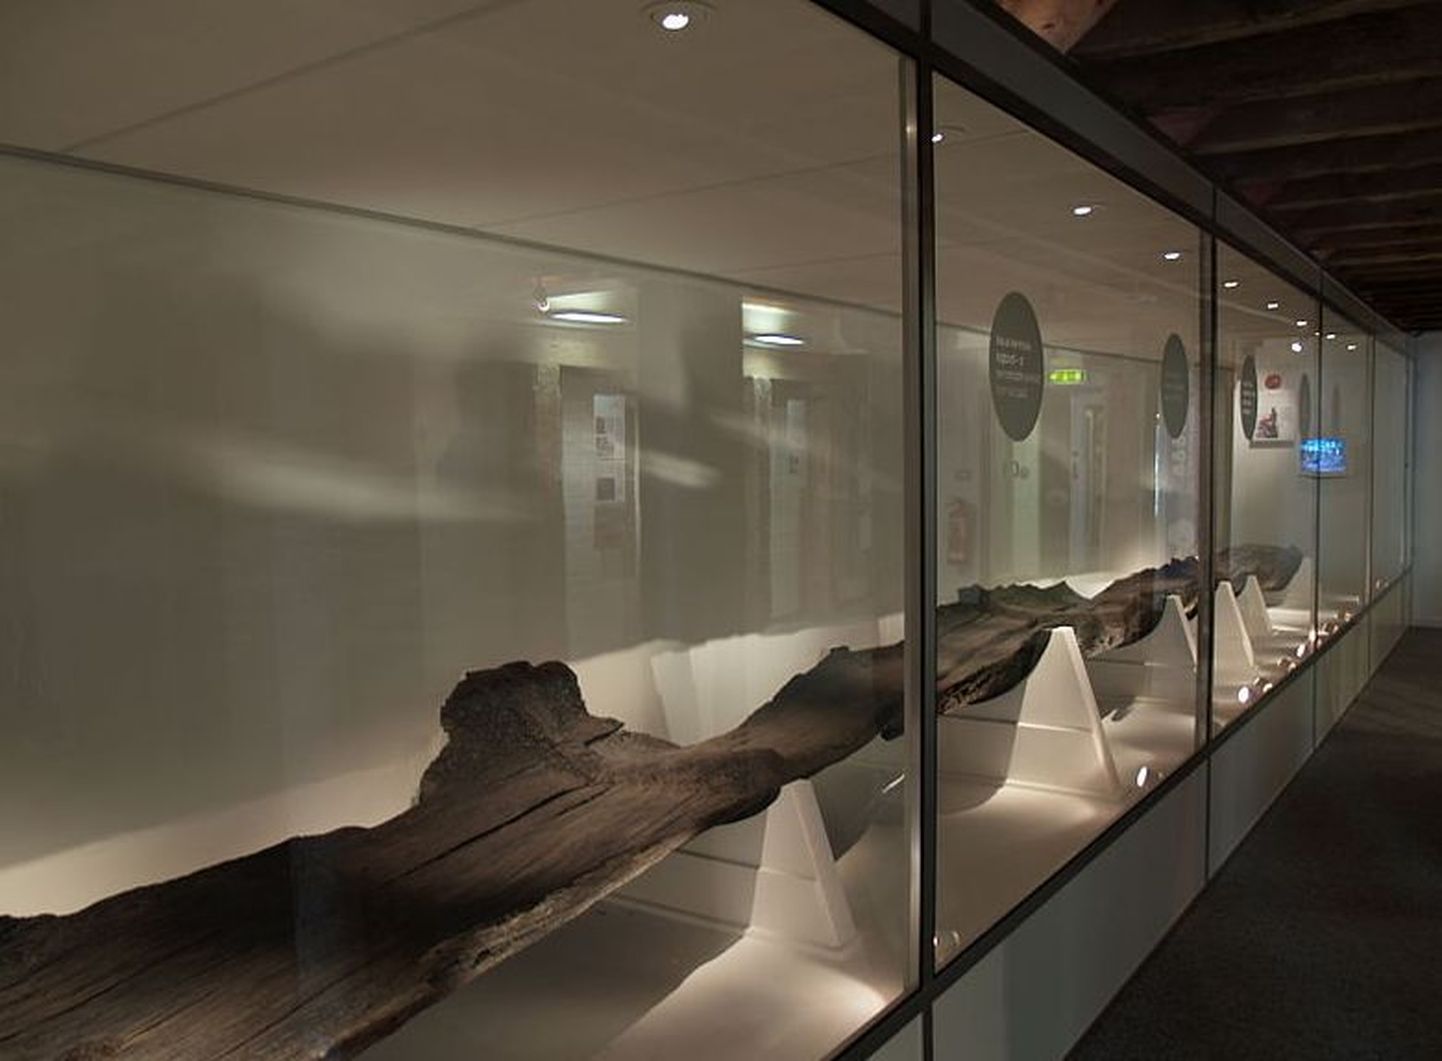 Poole´i sadamast leitud 2300 aasta vanuse tammepaadi jäänused